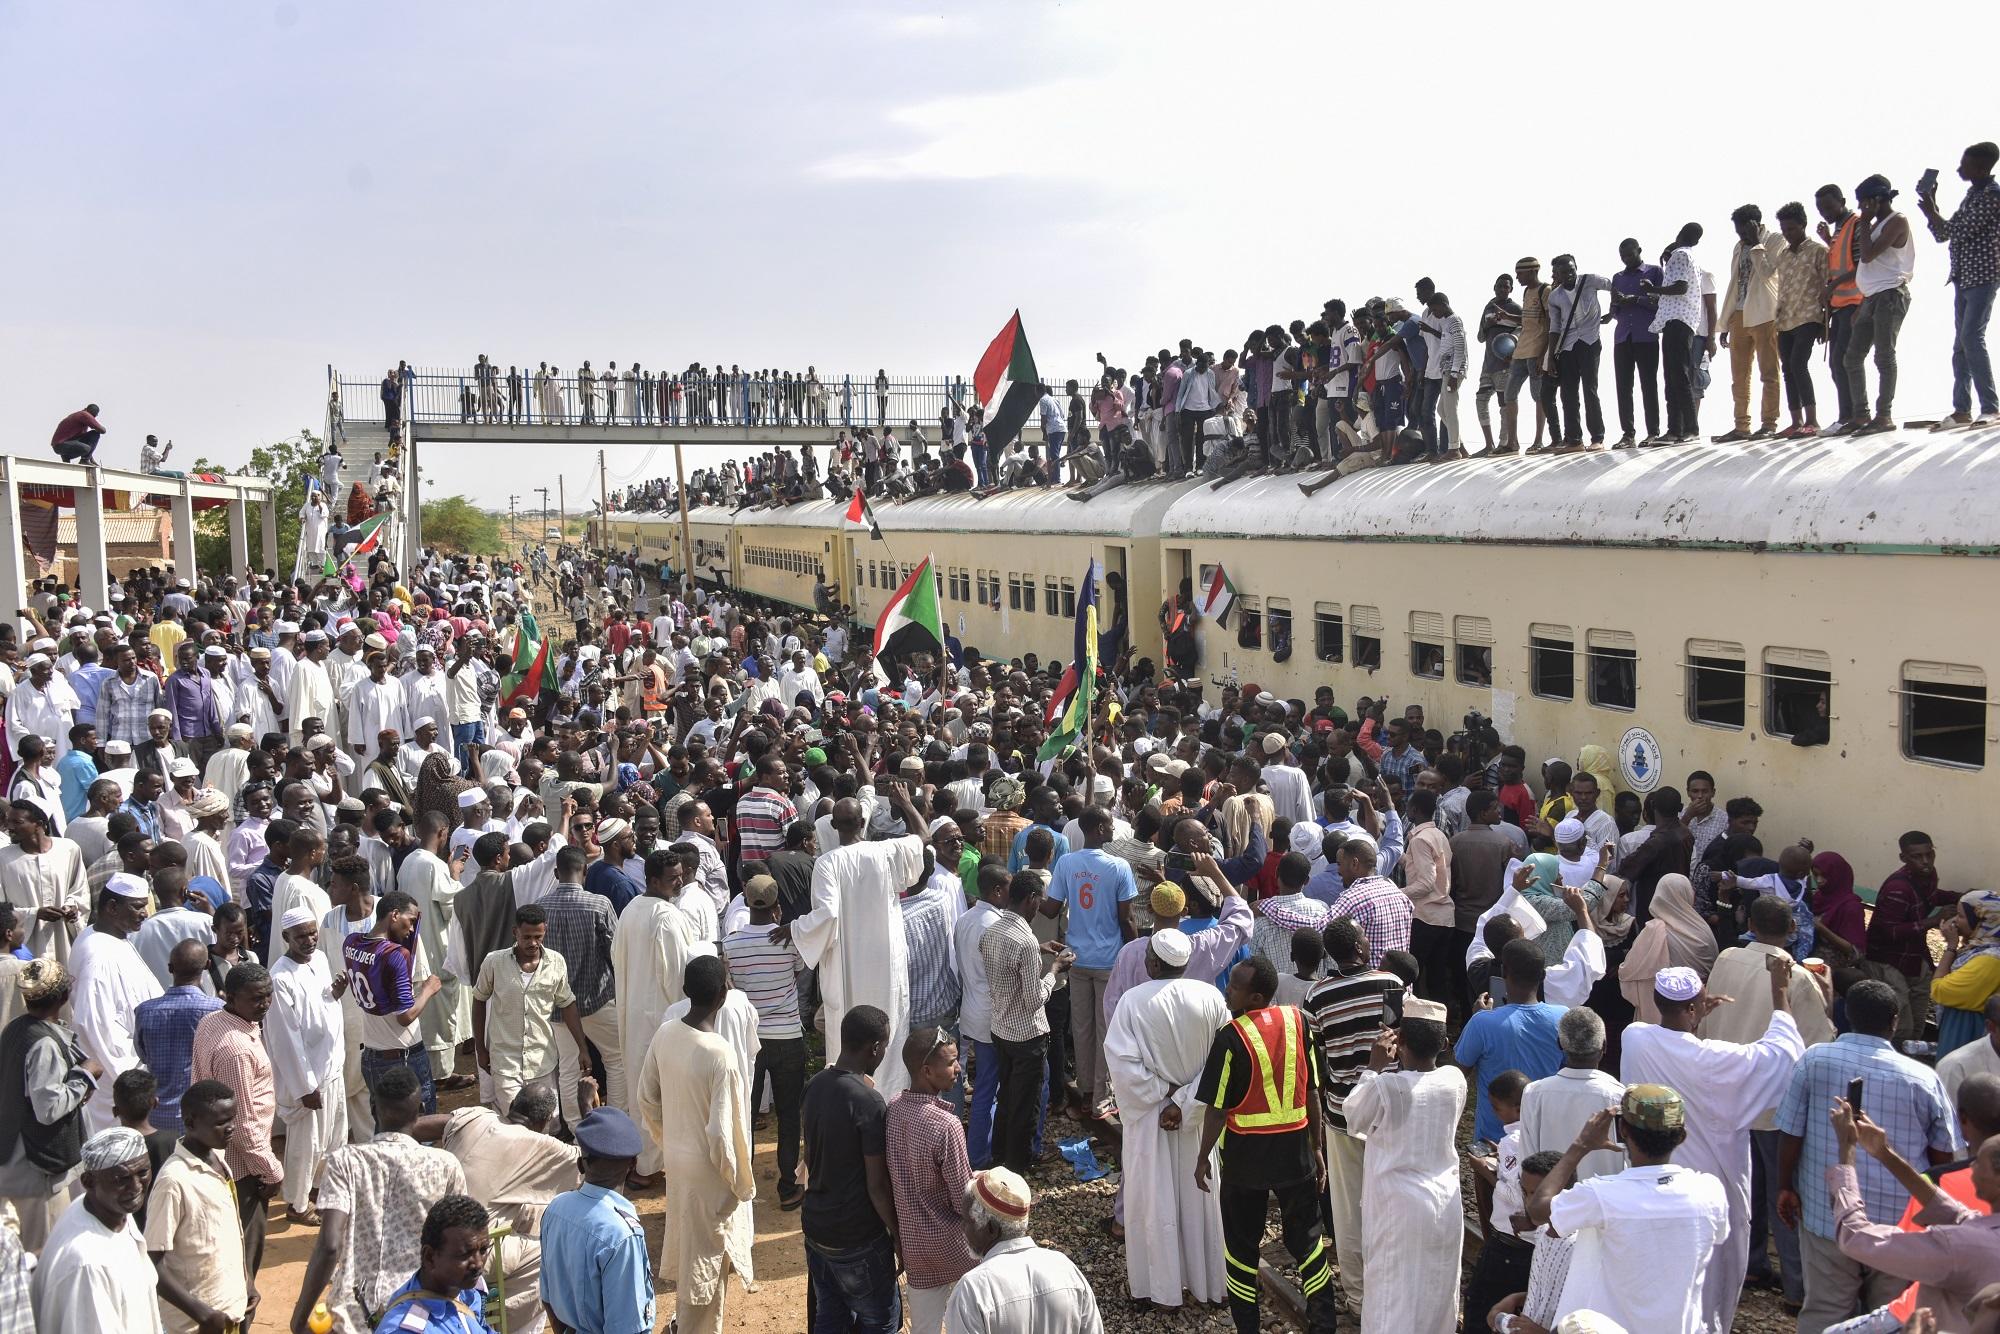 سودانيون من مدينة عطبرة يصلون إلى محطة بحري في الخرطوم للاحتفال ببدء الانتقال إلى الحكم المدني، 17/08/2019. (أحمد مصطفى/ أ ف ب)